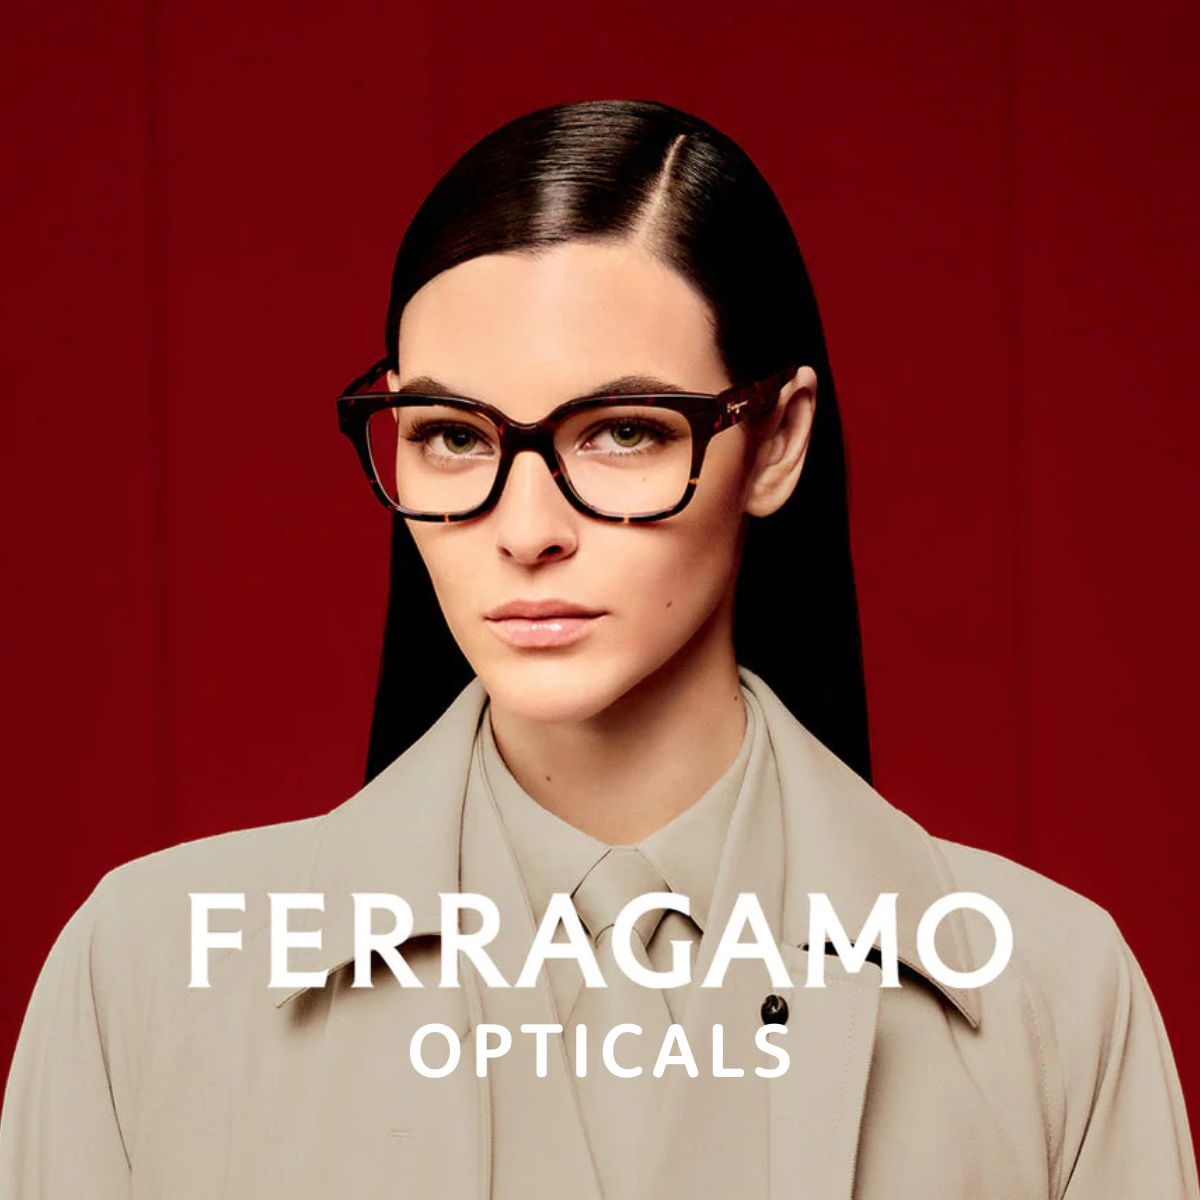 "Salvatore Ferragamo Optical glasses & sunglasses, Spectacles"